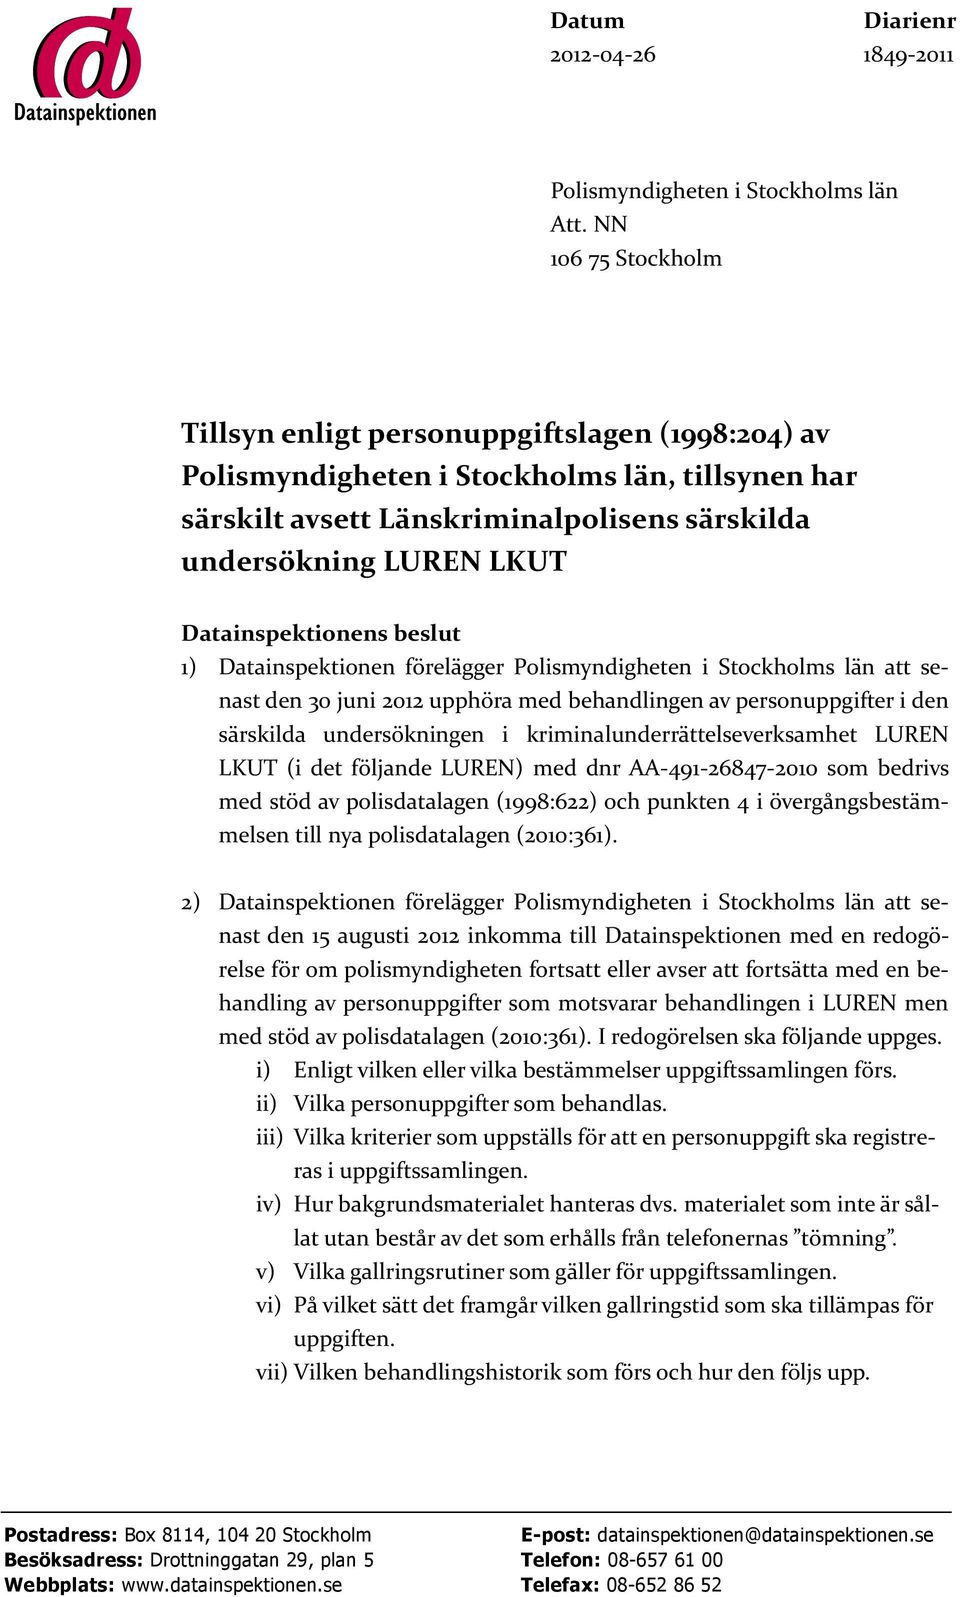 Datainspektionens beslut 1) Datainspektionen förelägger Polismyndigheten i Stockholms län att senast den 30 juni 2012 upphöra med behandlingen av personuppgifter i den särskilda undersökningen i